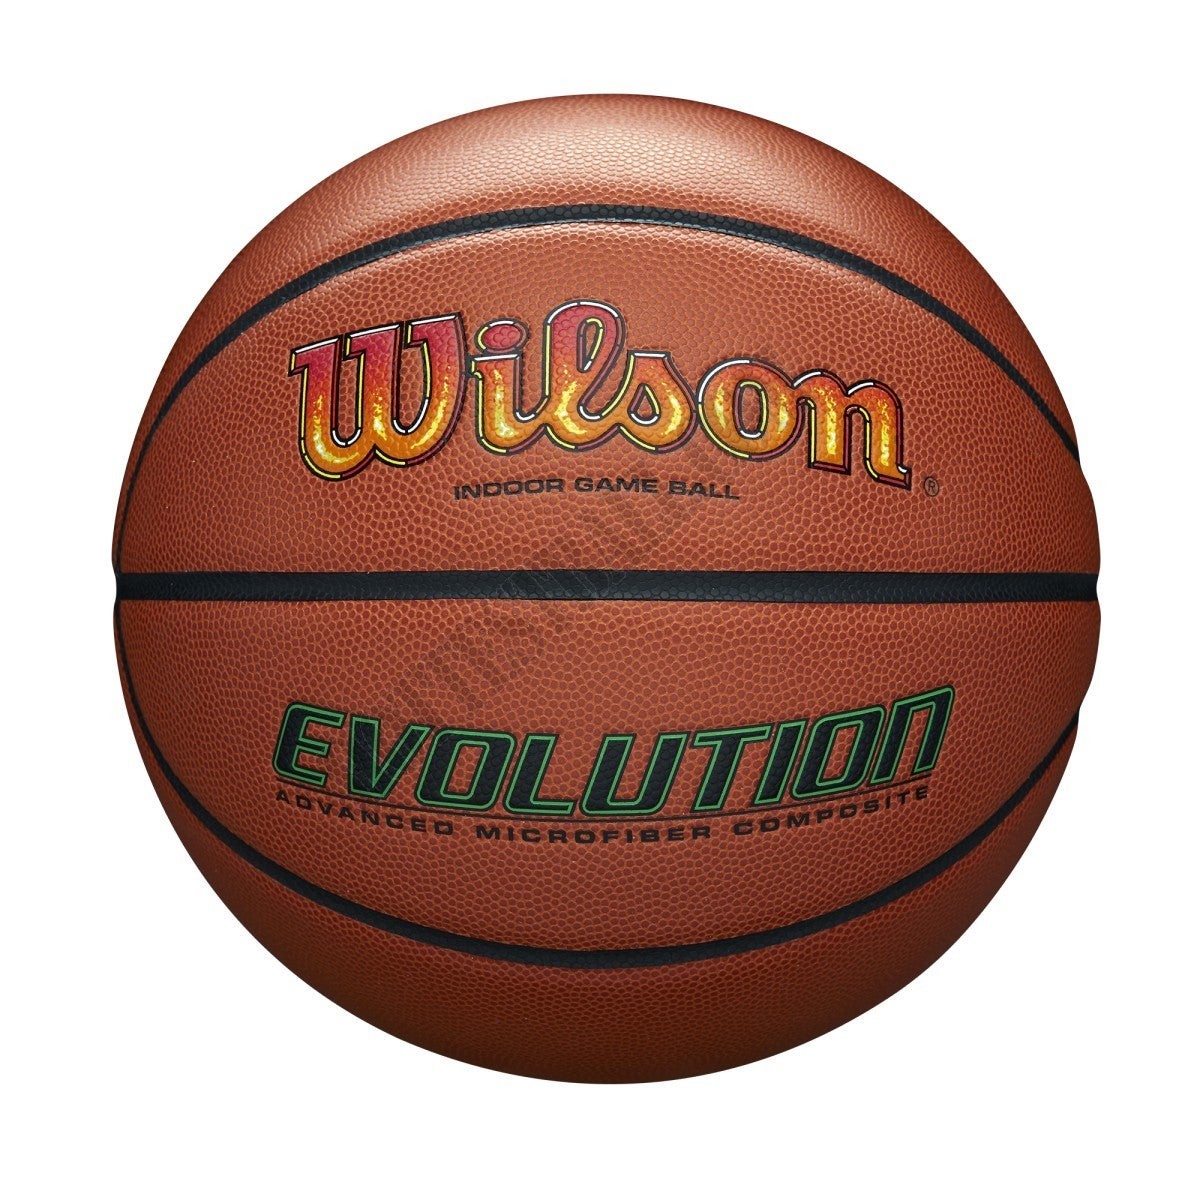 Evolution '90s Pack Basketball: On Fire - Wilson Discount Store - Evolution '90s Pack Basketball: On Fire - Wilson Discount Store